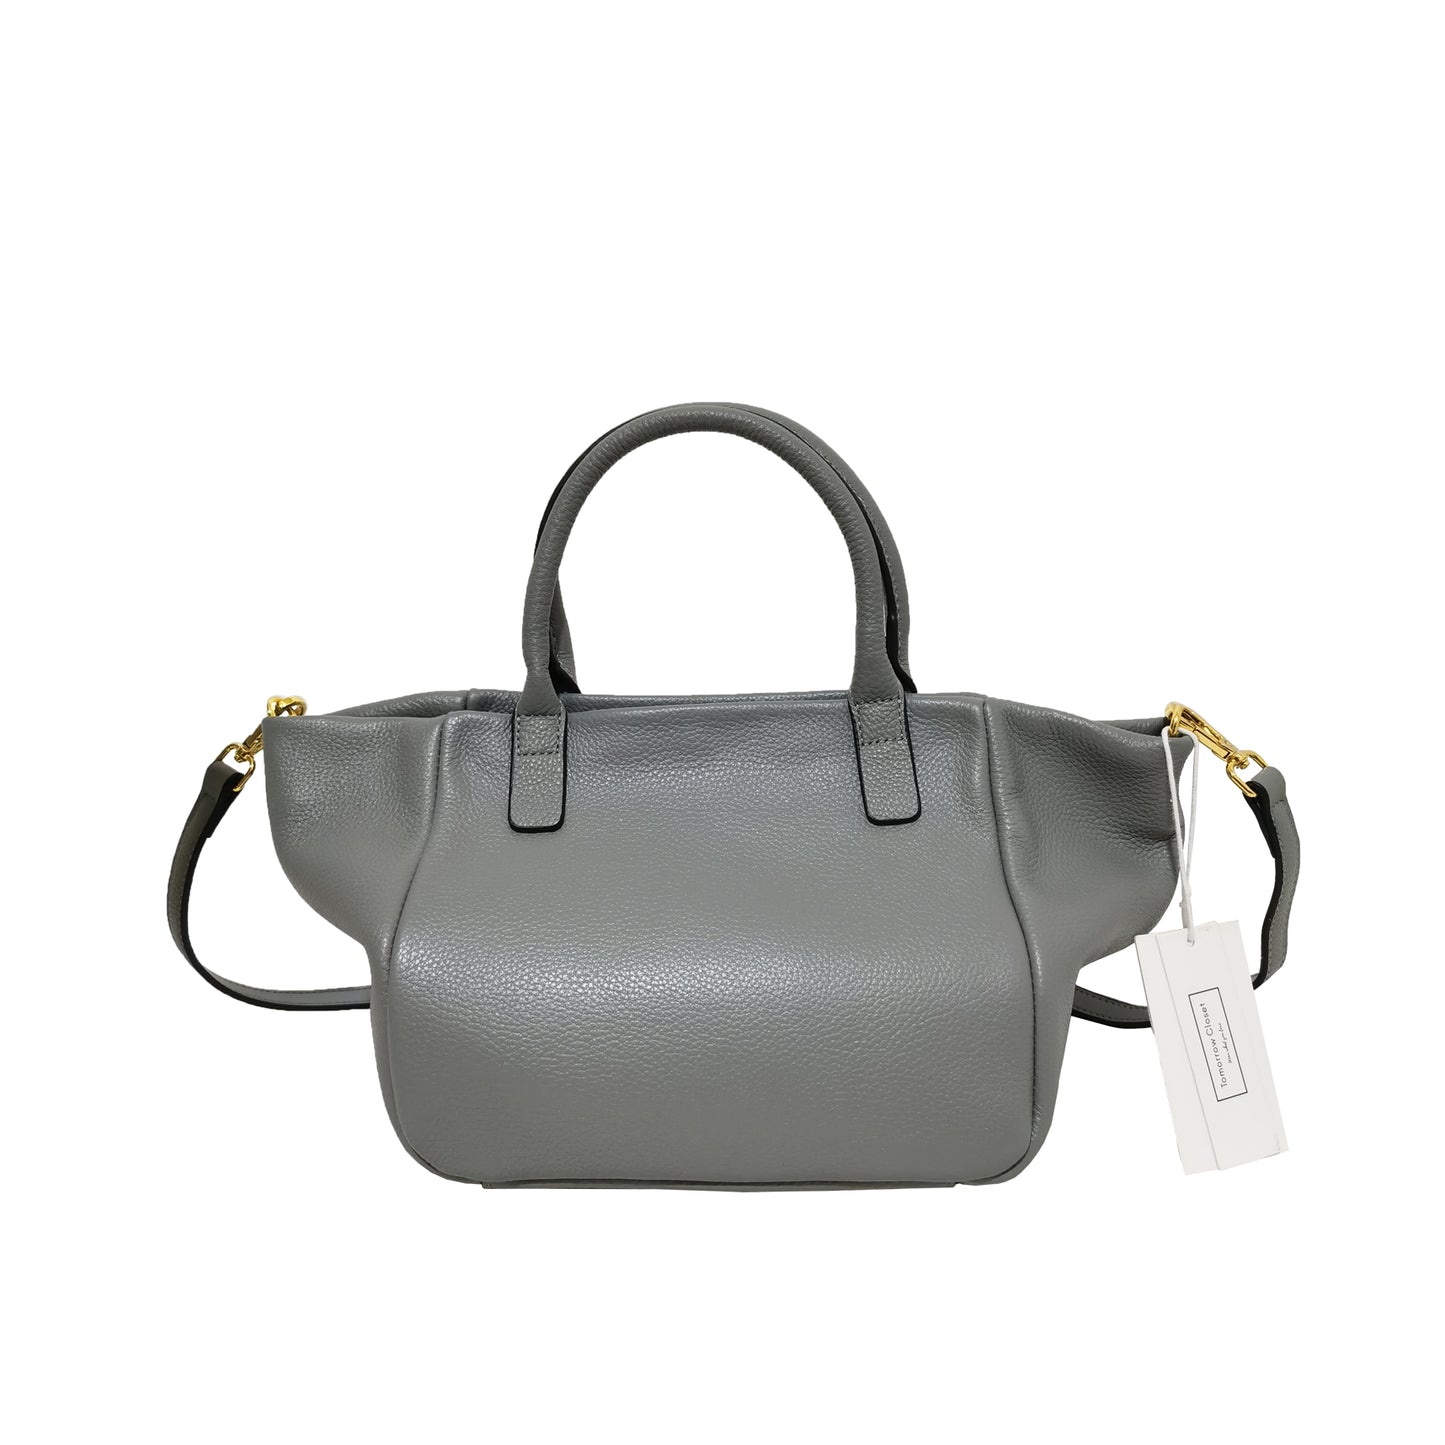 Women's genuine cowhide leather handbag Nodel v2 design